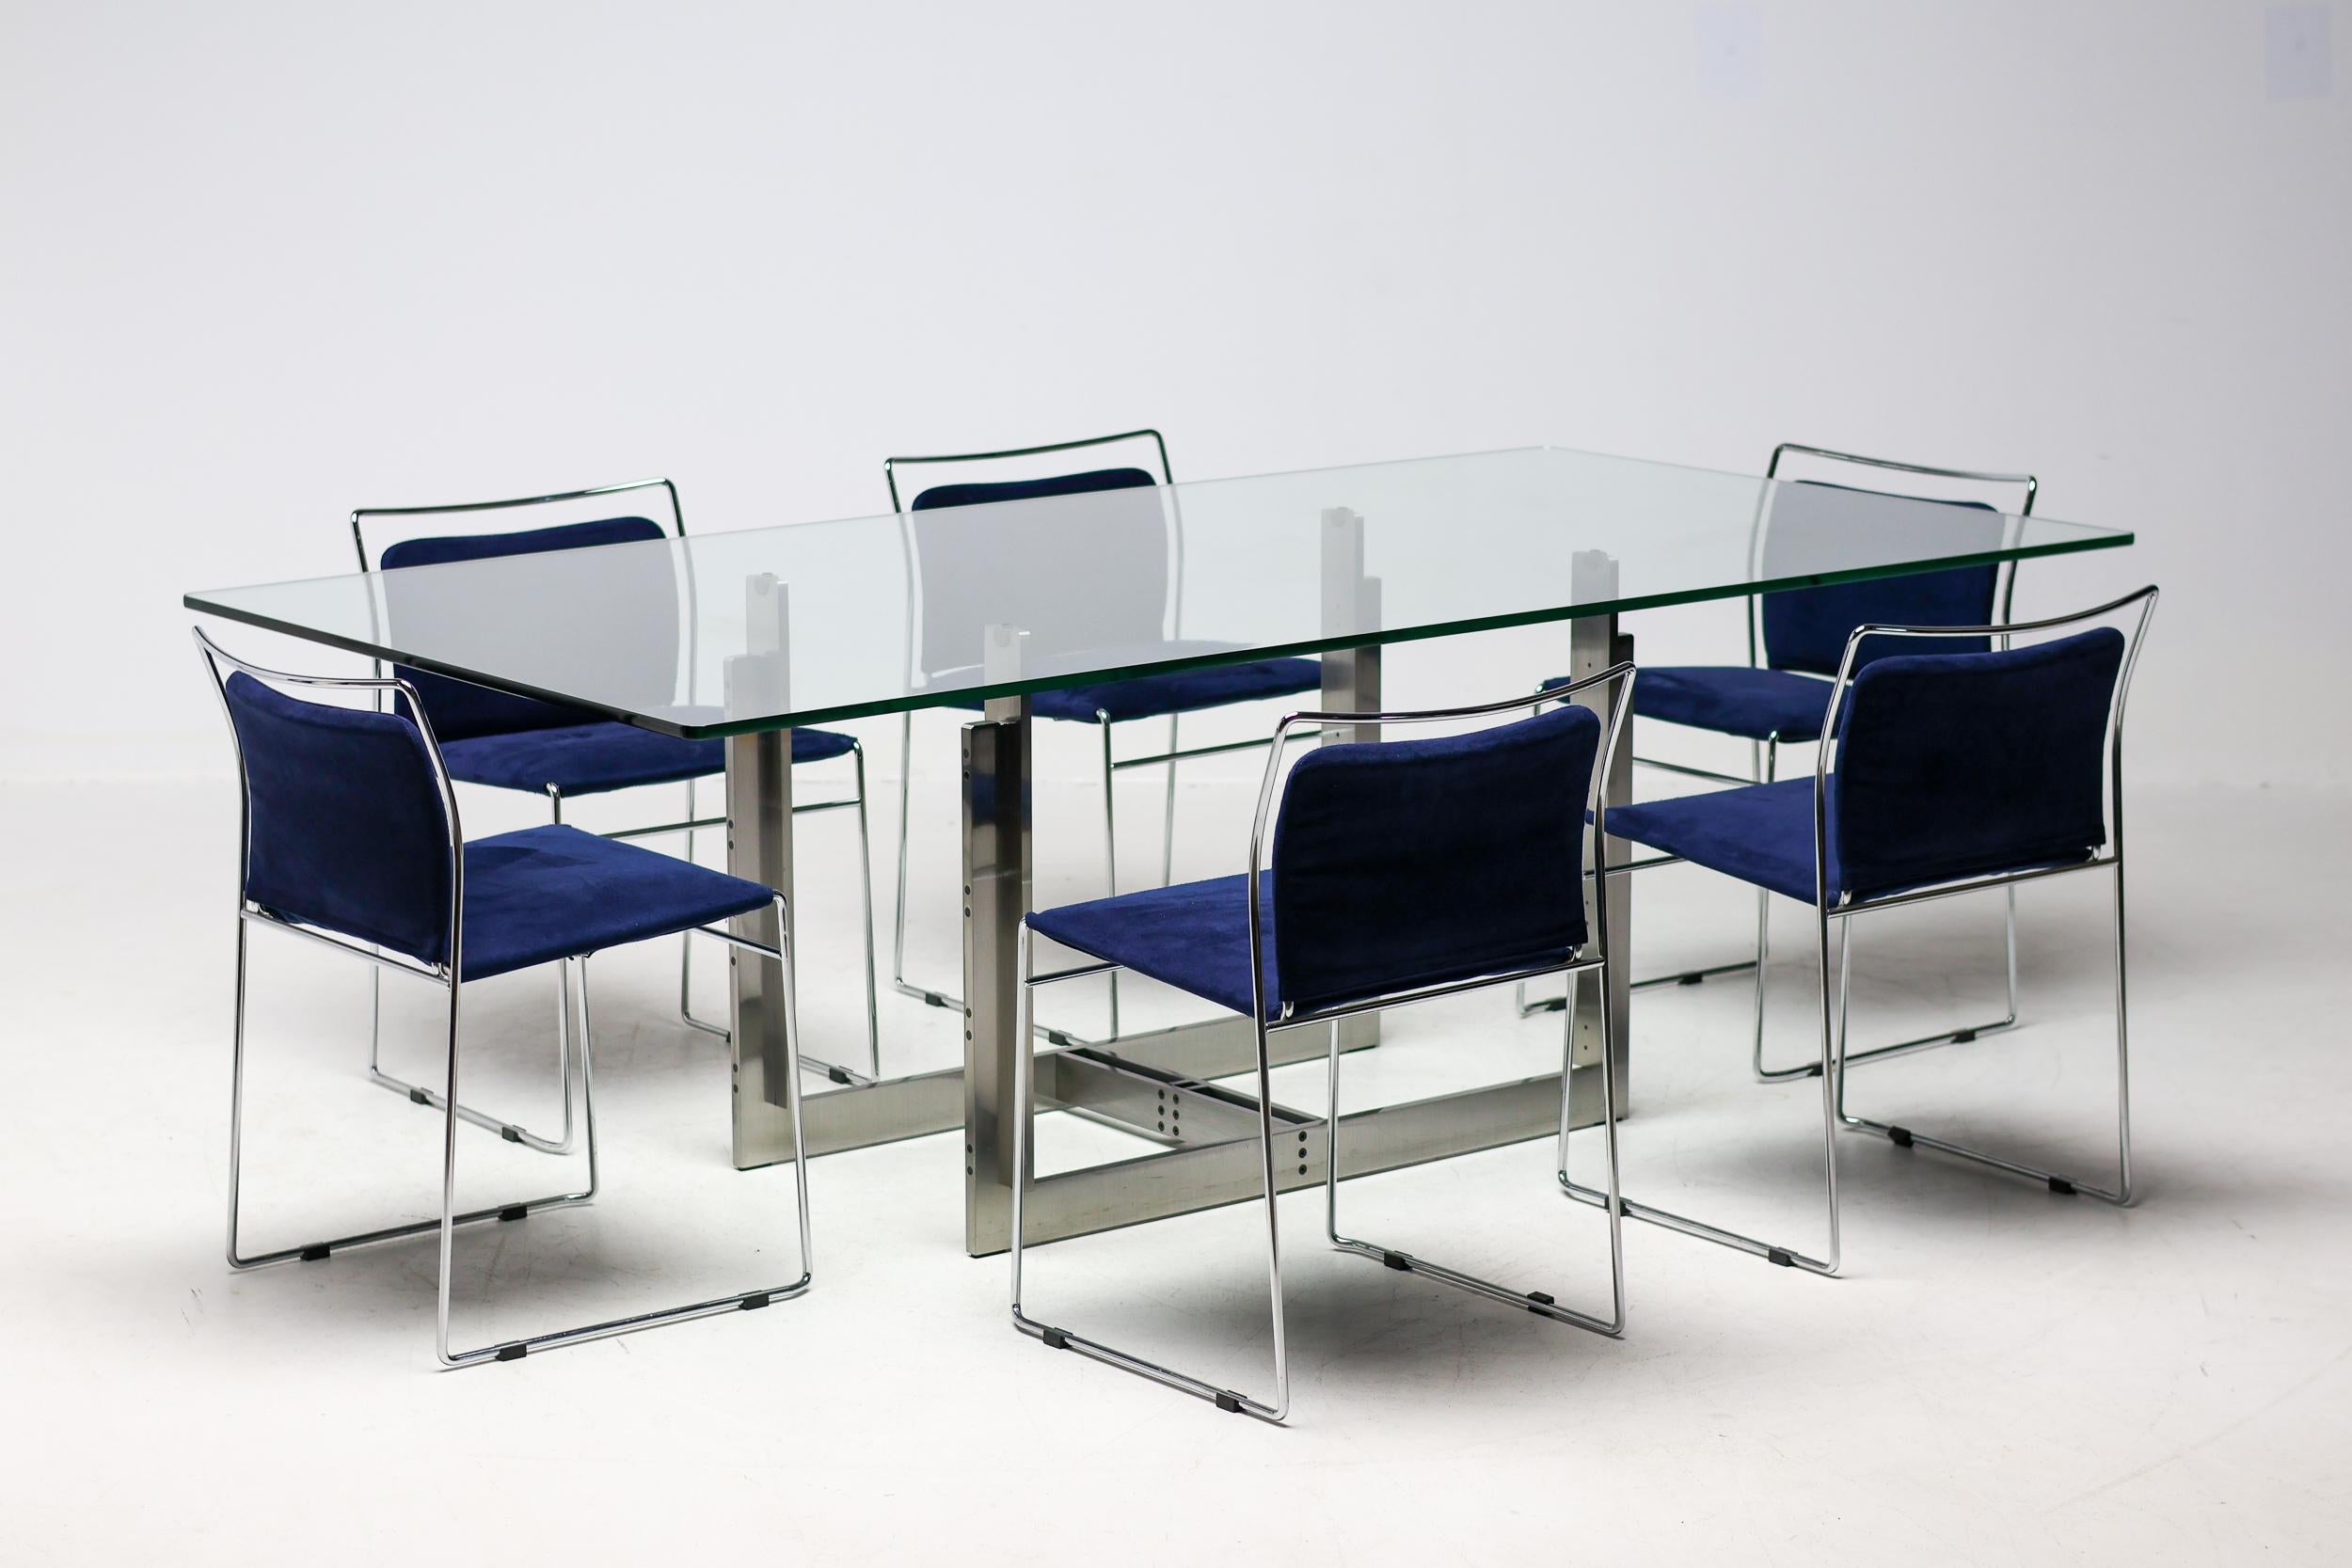 Der Tulu-Stuhl wurde 1966 von dem japanischen Designer Kazuhide Takahama für Simon International entworfen. 
Die Tulu ist eines der allerersten Modelle, die den Weg für die Verwendung von verchromten Stahlstäben ebneten. Der Stahlstab ermöglicht die